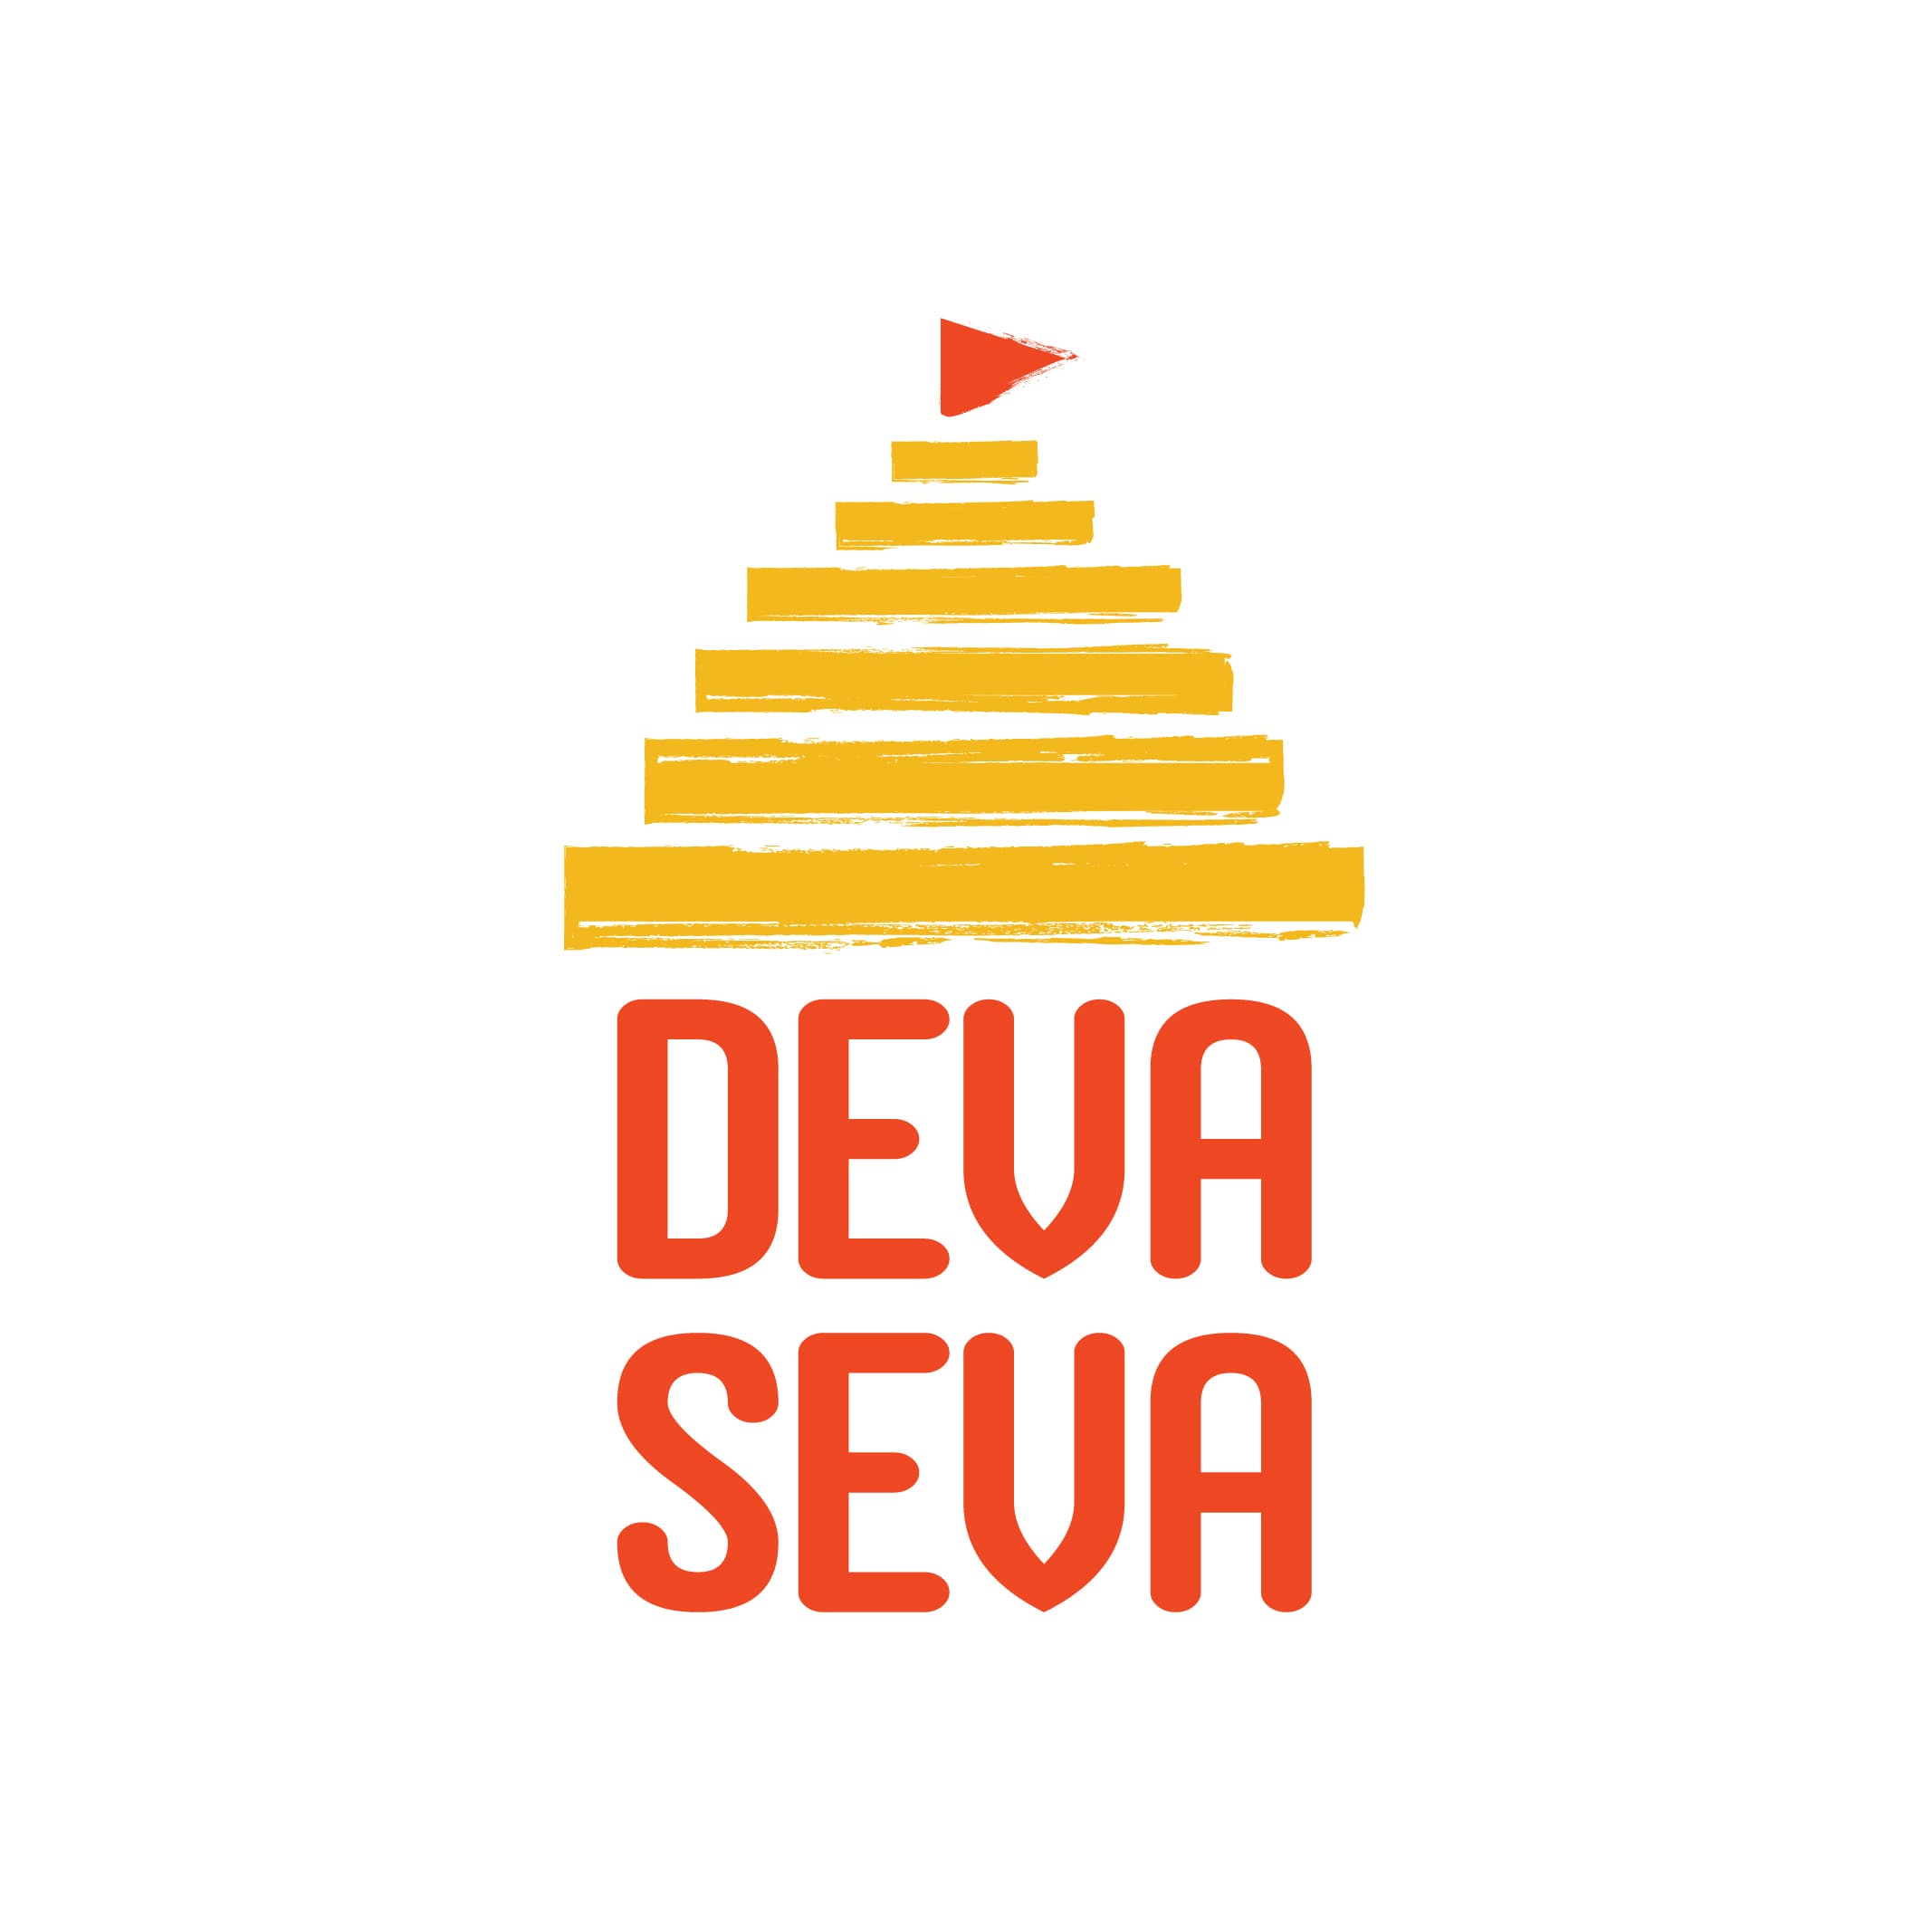 Devaseva's logo